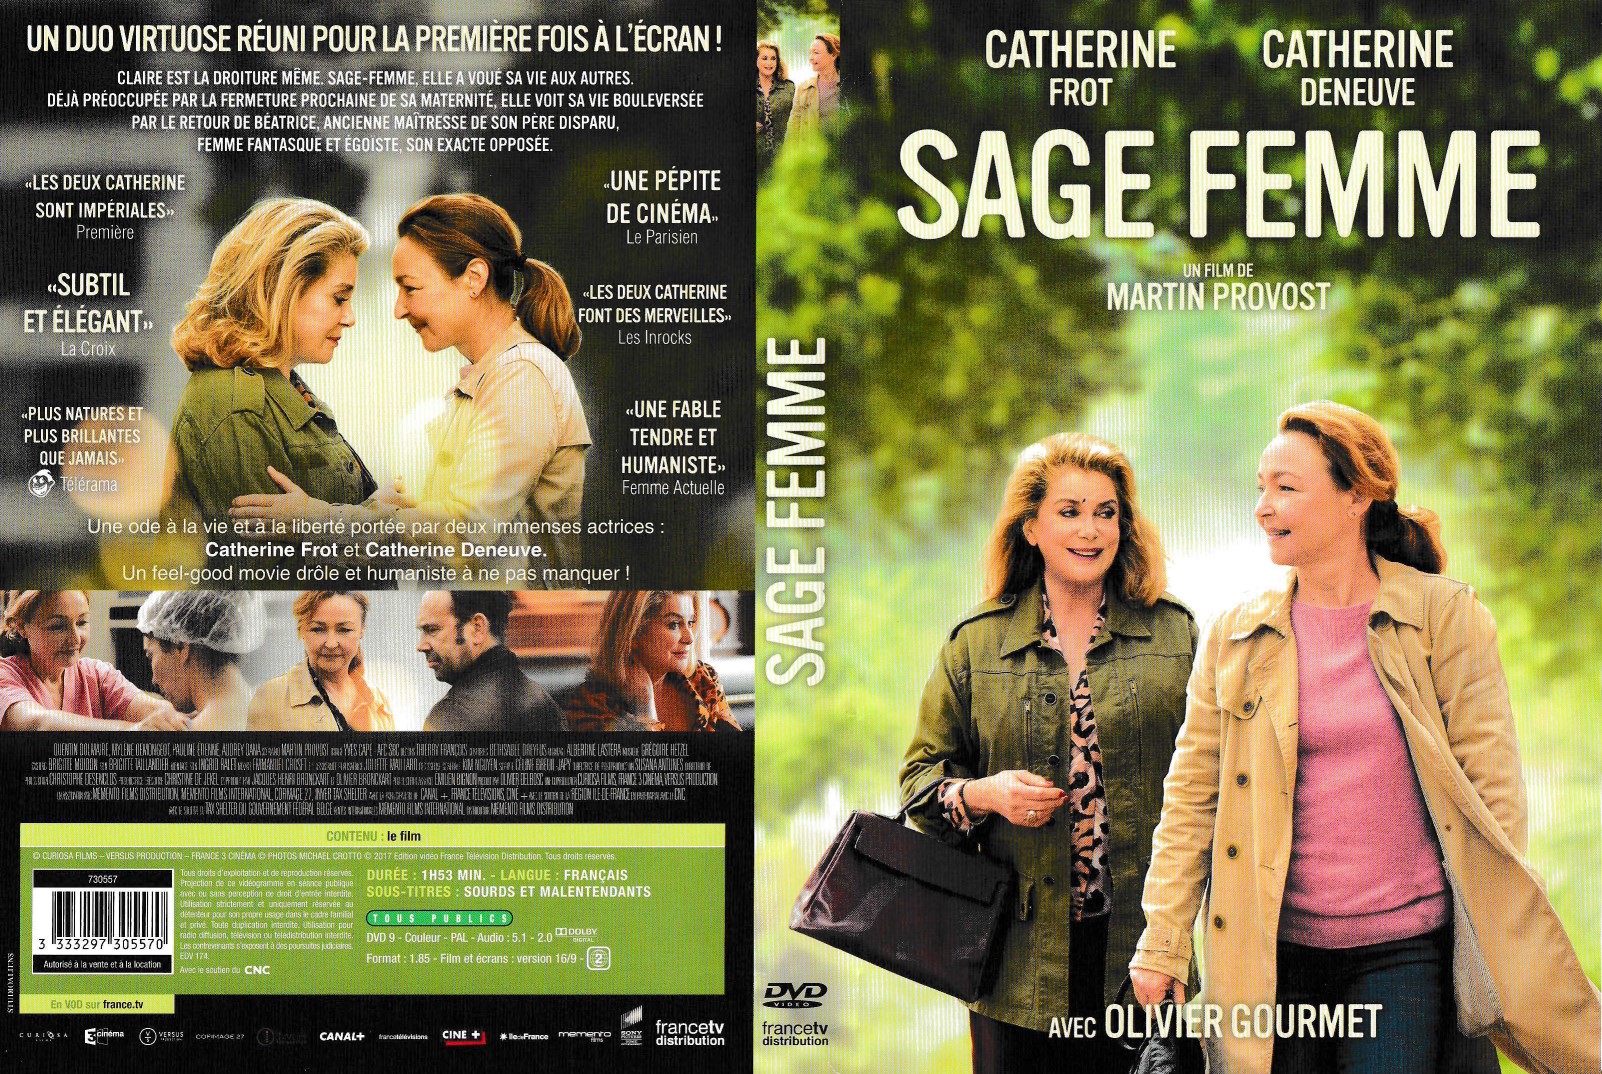 Jaquette DVD Sage femme